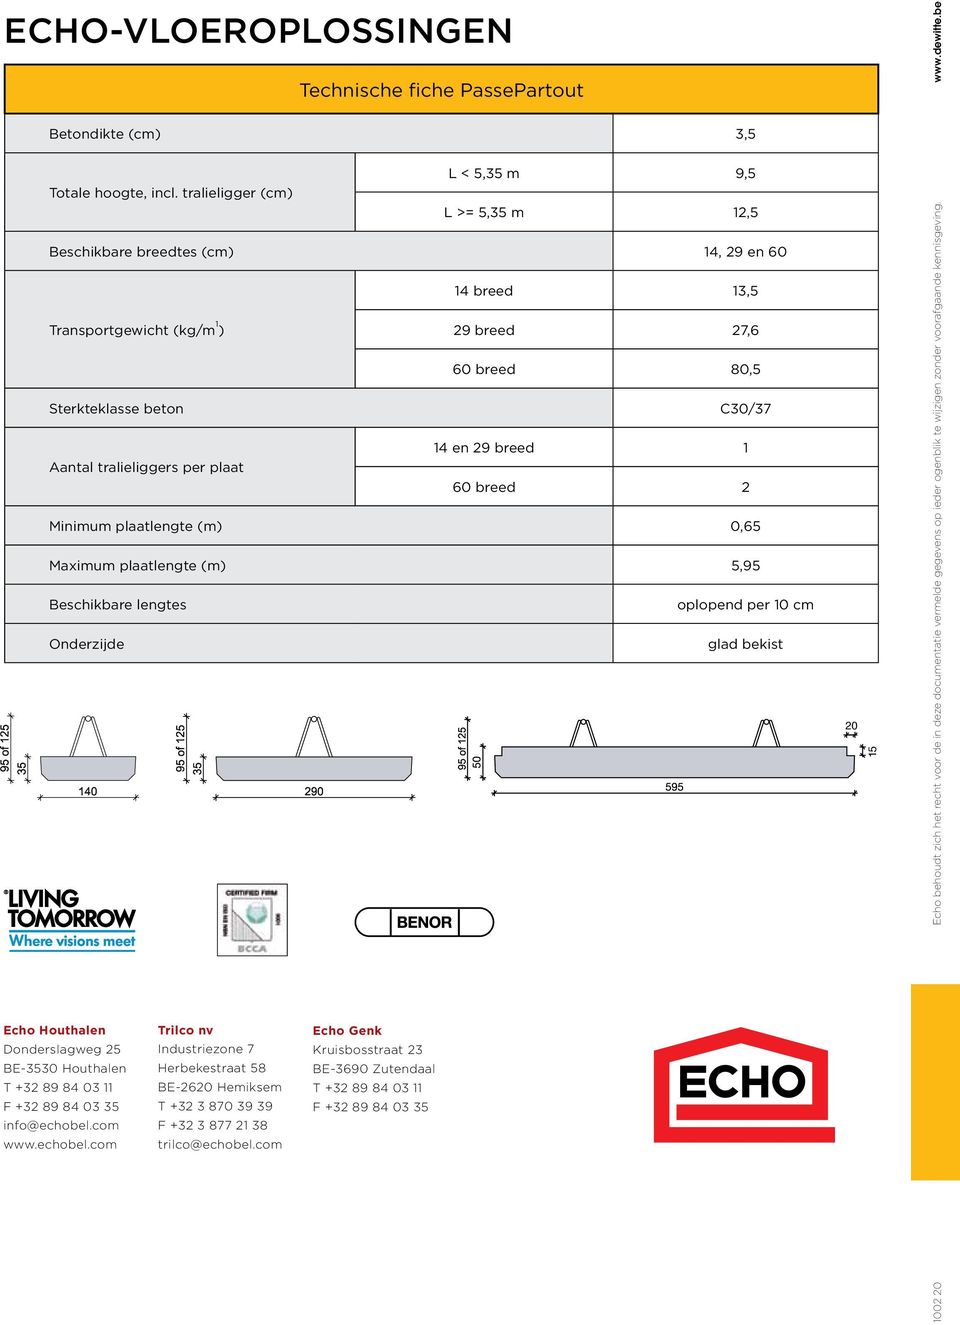 tralieliggers per plaat 60 breed 2 Minimum plaatlengte (m) 0,65 Maximum plaatlengte (m) 5,95 Beschikbare lengtes oplopend per 10 cm Onderzijde glad bekist 20 1002 20 Echo behoudt zich het recht voor